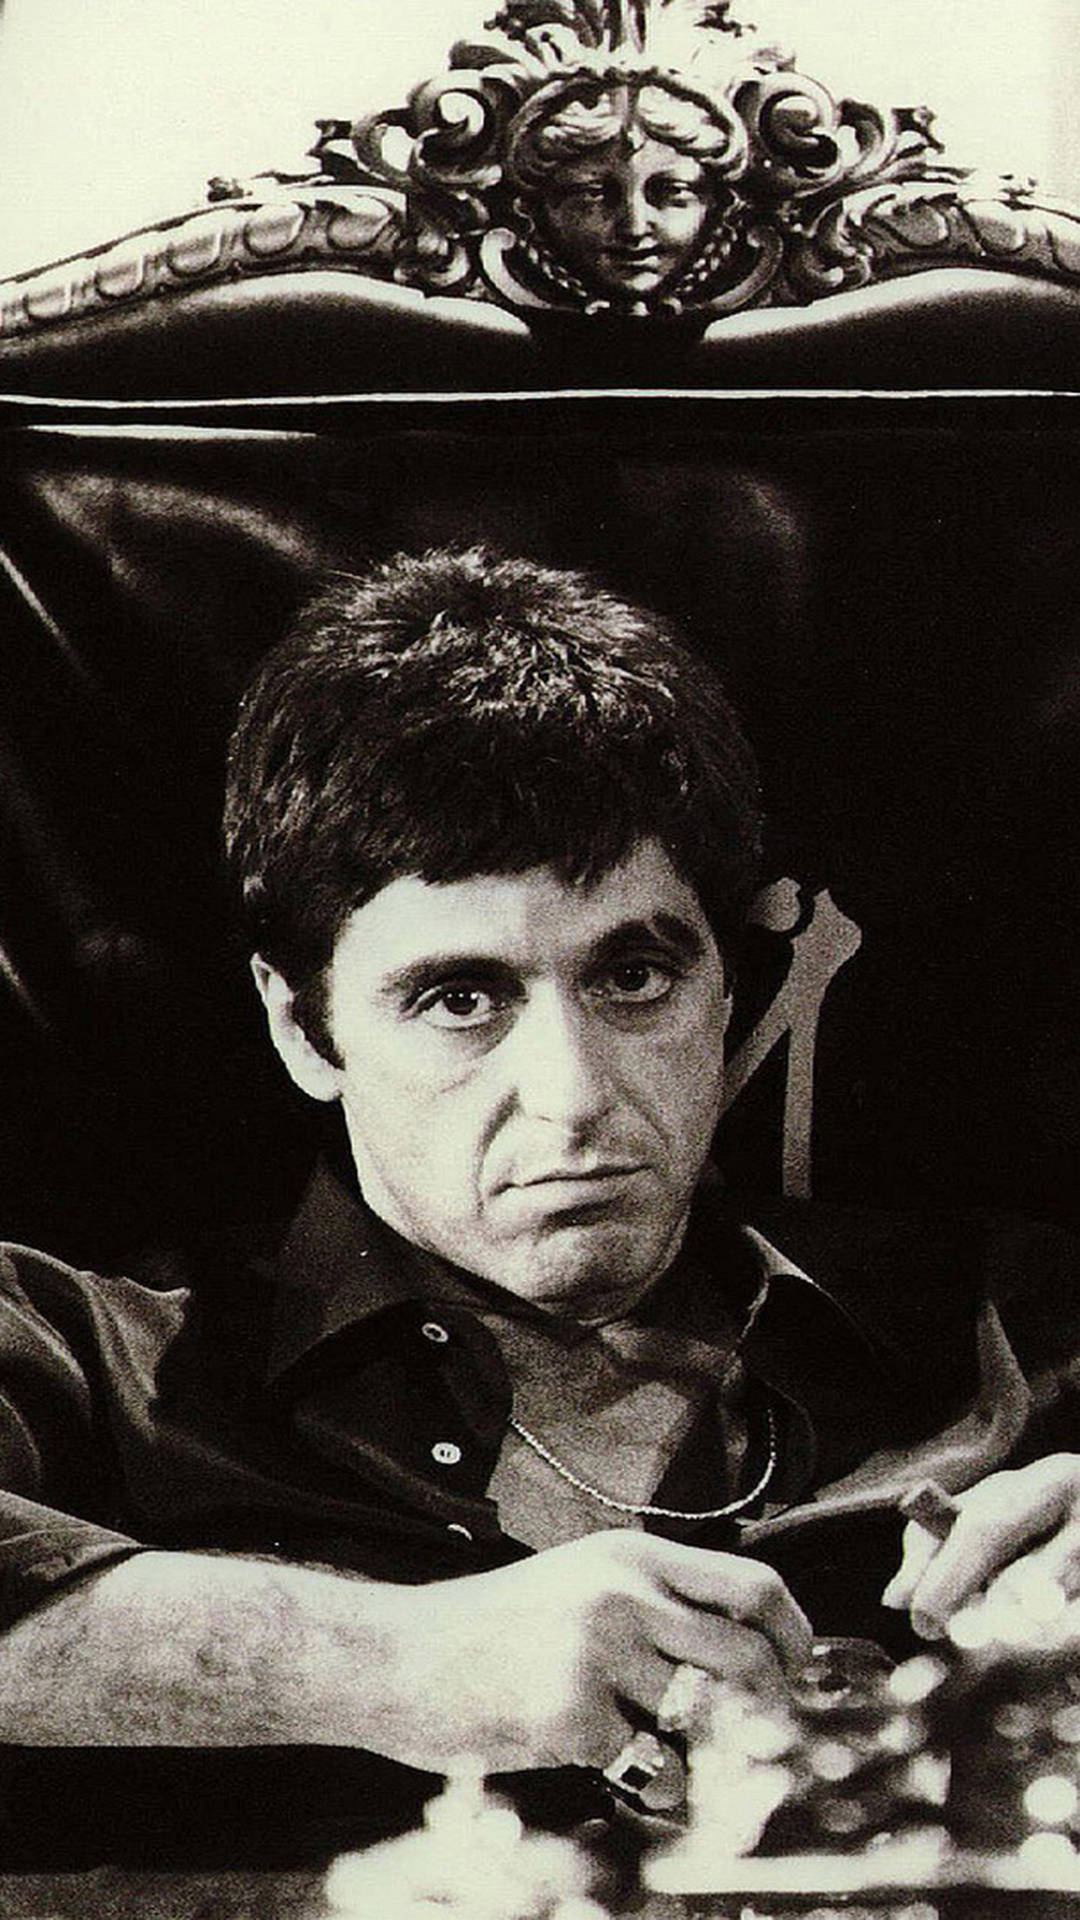 Siddende Al Pacino Scarface er et cool baggrundsbillede. Wallpaper